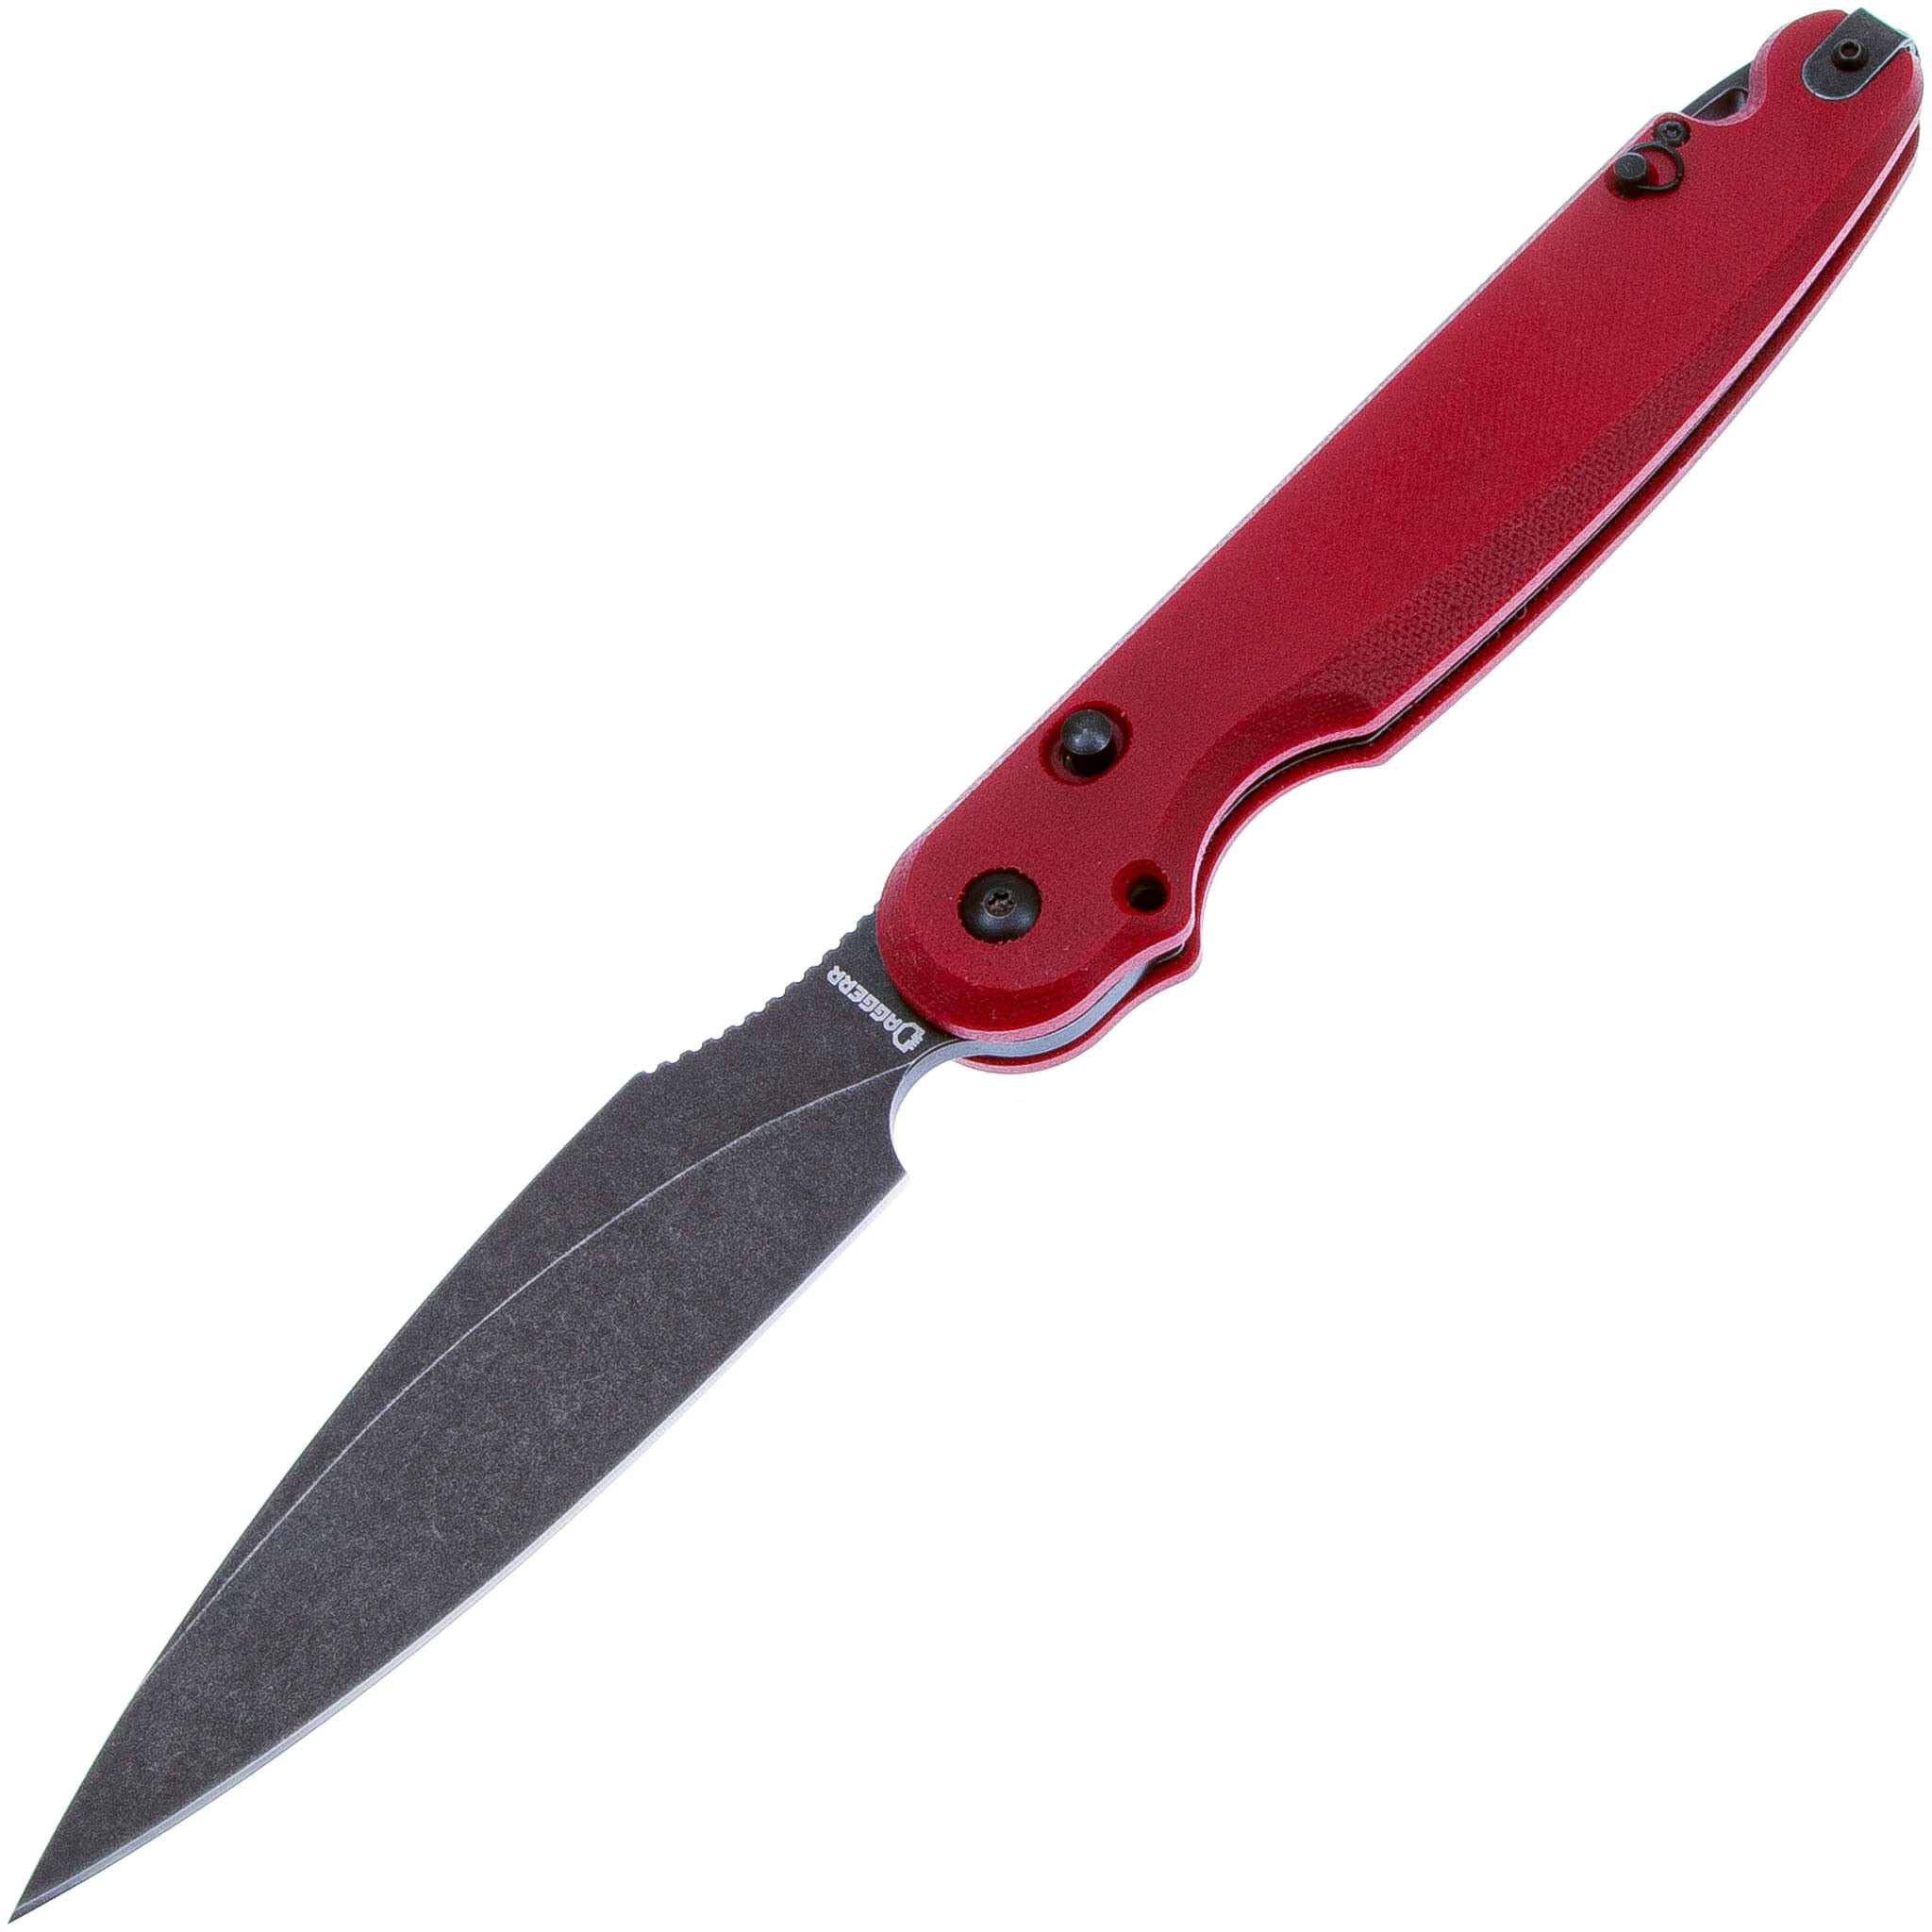 Складной нож Daggerr Parrot 3.0 Red Micarta, сталь D2, рукоять микарта - фото 1